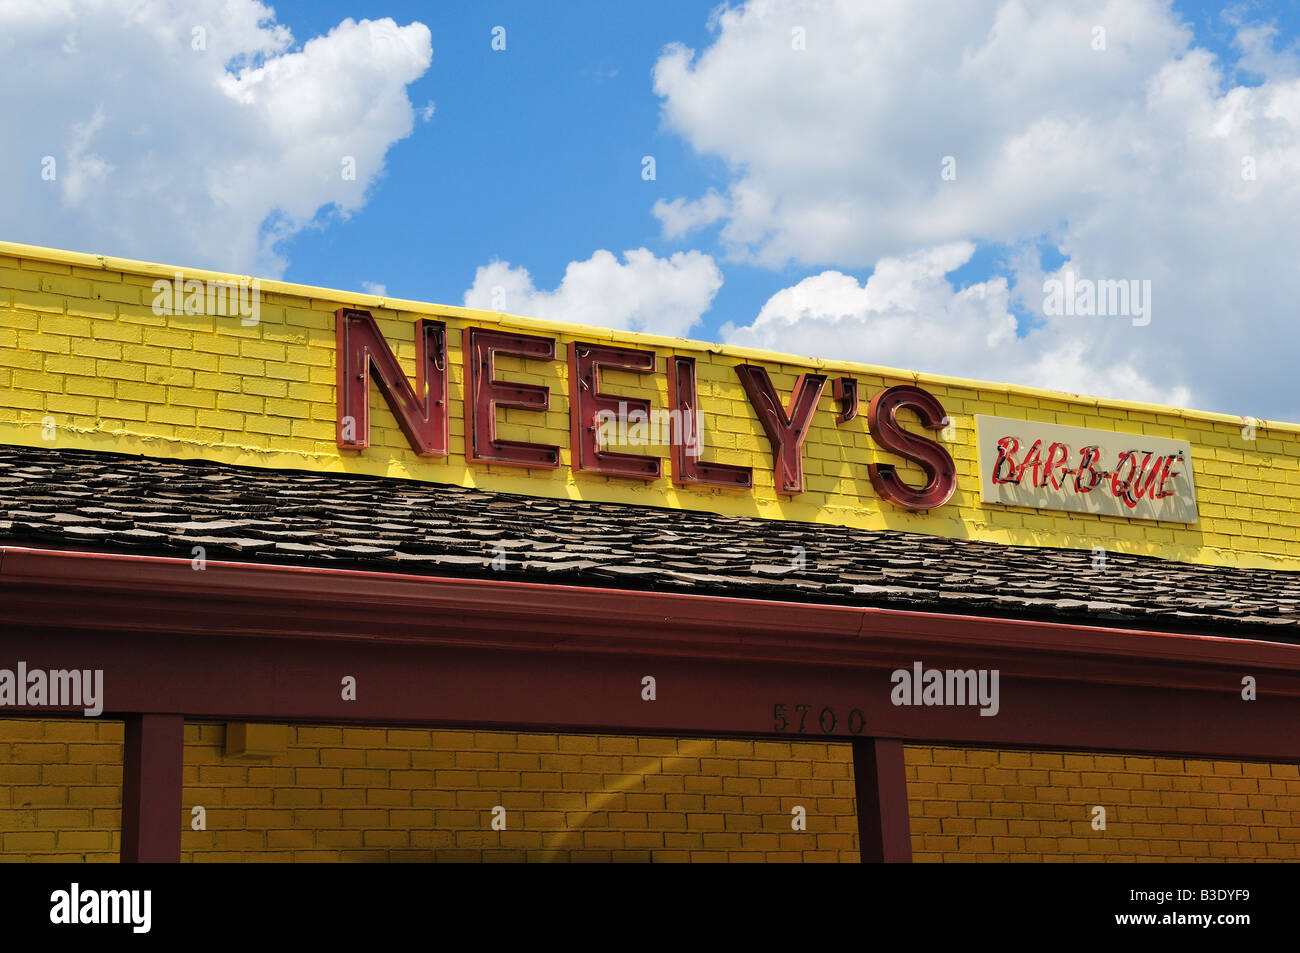 Neely ist außen Bar-B-Que Restaurant in Memphis, Tennessee, Vereinigte Staaten von Amerika, Nordamerika. Stockfoto